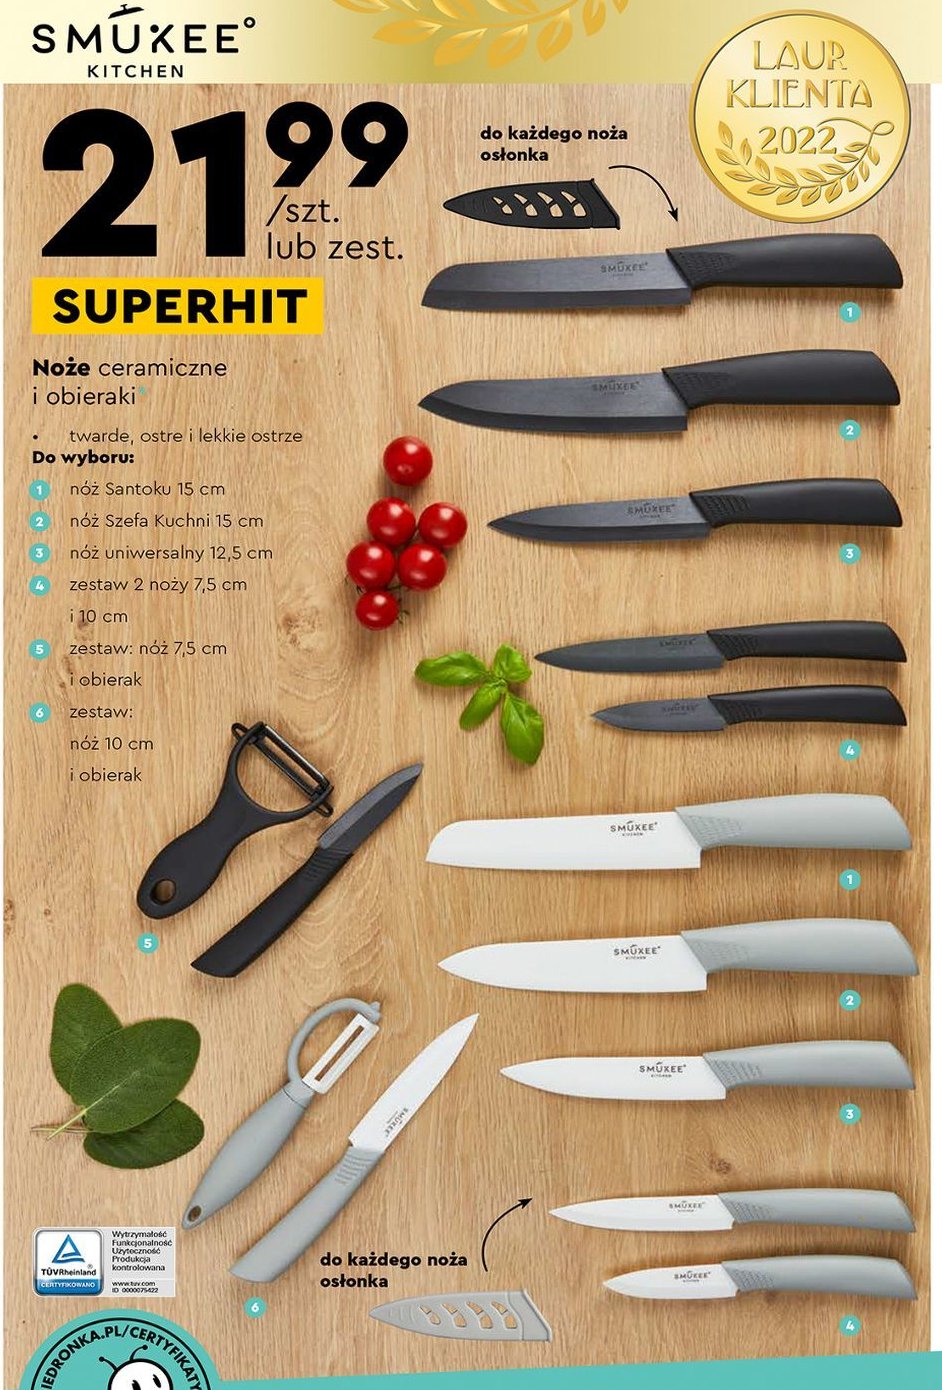 Nóż szefa kuchni 15 cm Smukee kitchen promocja